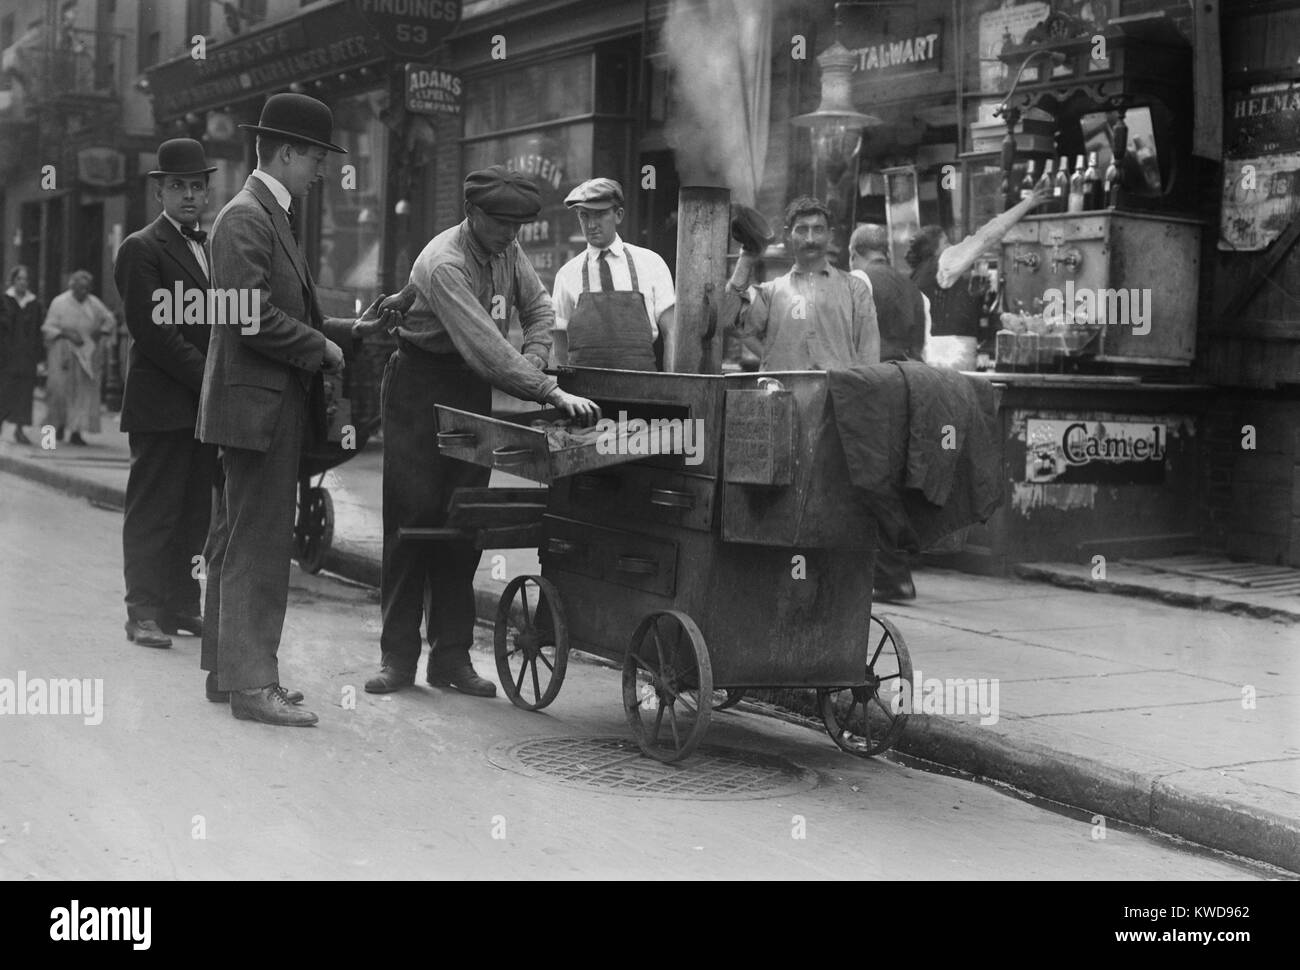 Pomme de terre au four avec une pushcart four à New York du Lower East Side, ch. 1915-20. Le quartier était rempli d'immigrants juifs d'Europe orientale (BSLOC 2016 8 81) Banque D'Images